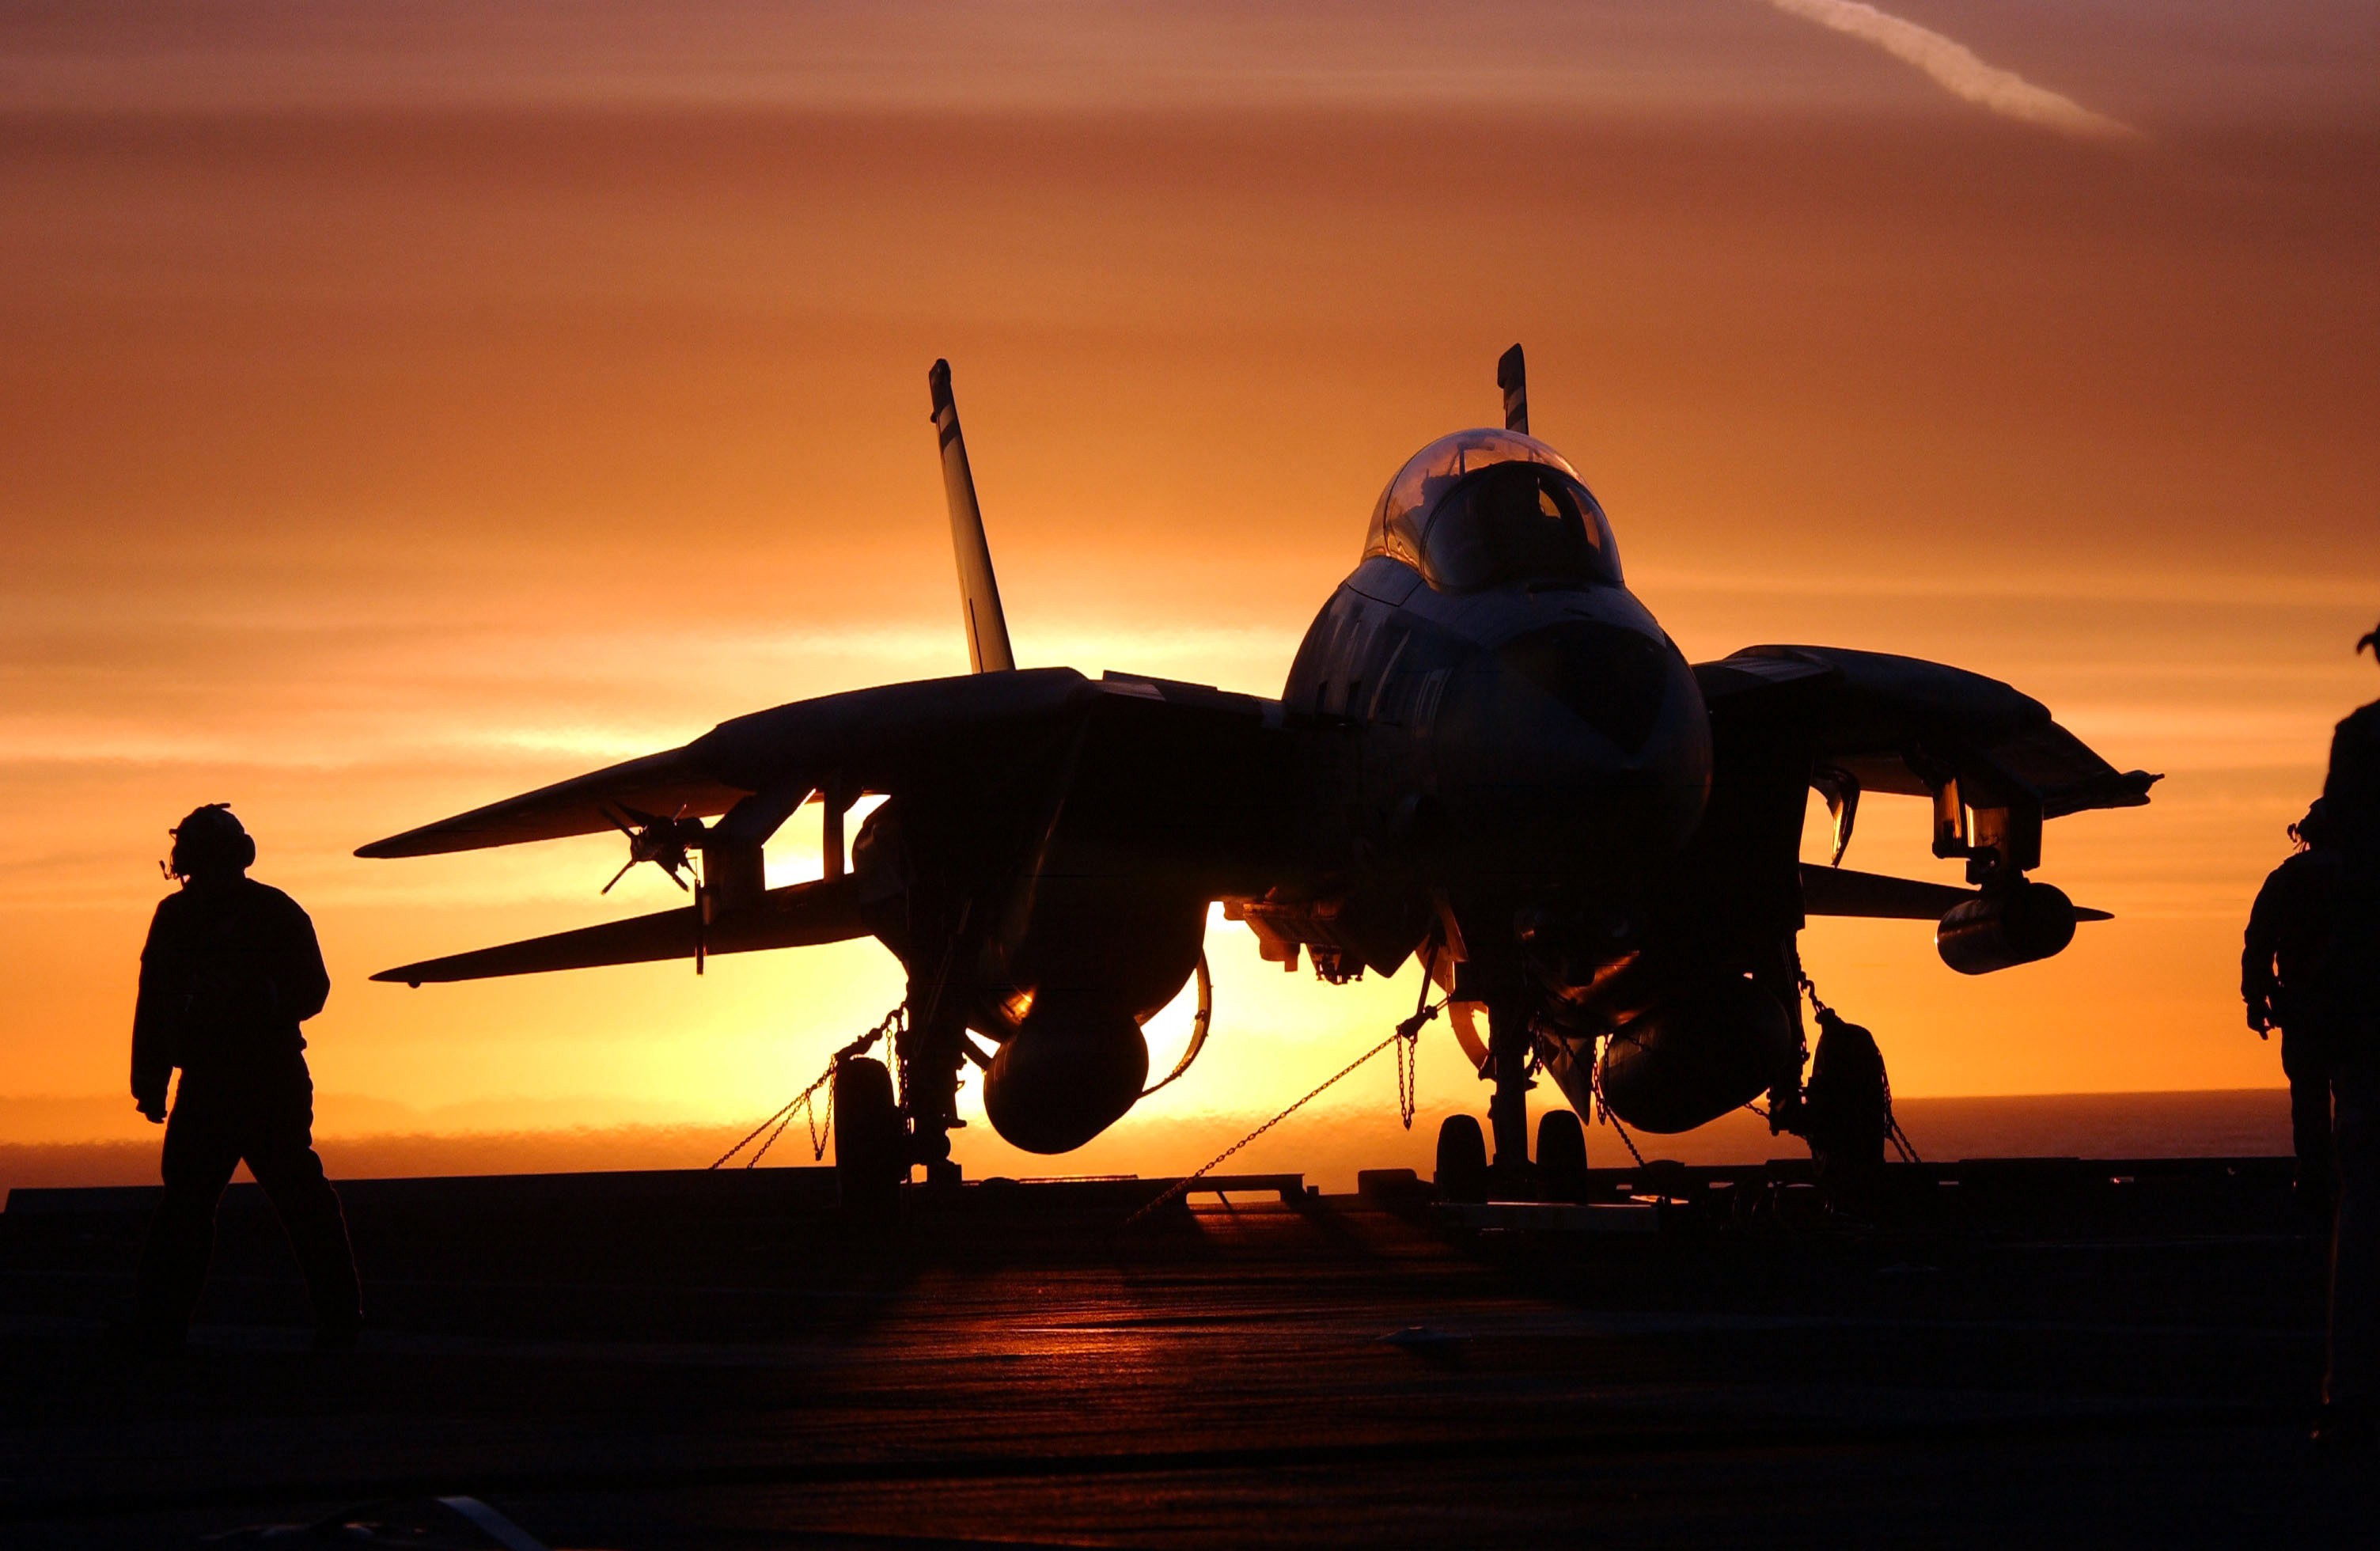 Us Navy Aircraft At Sunset Hd Images